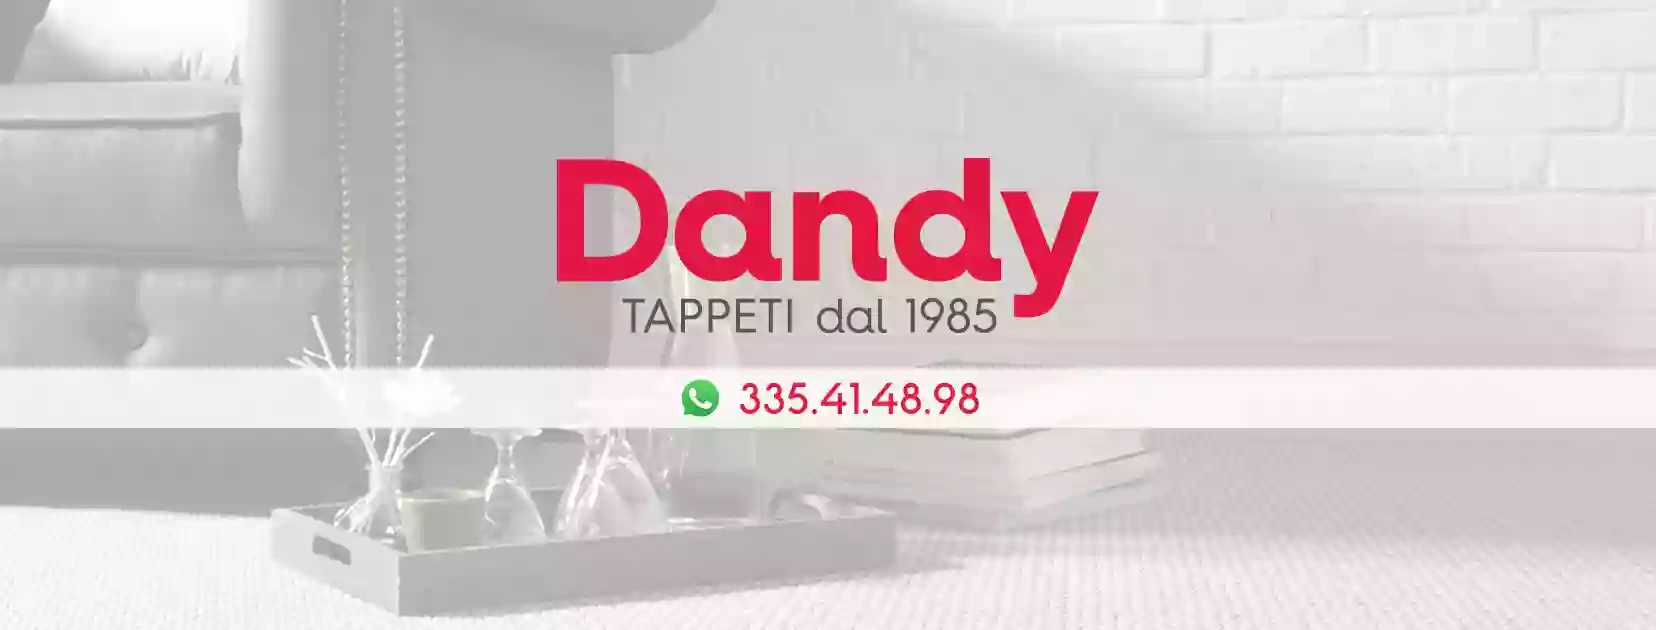 Dandy - Tappeti e Zerbini Personalizzati su Misura